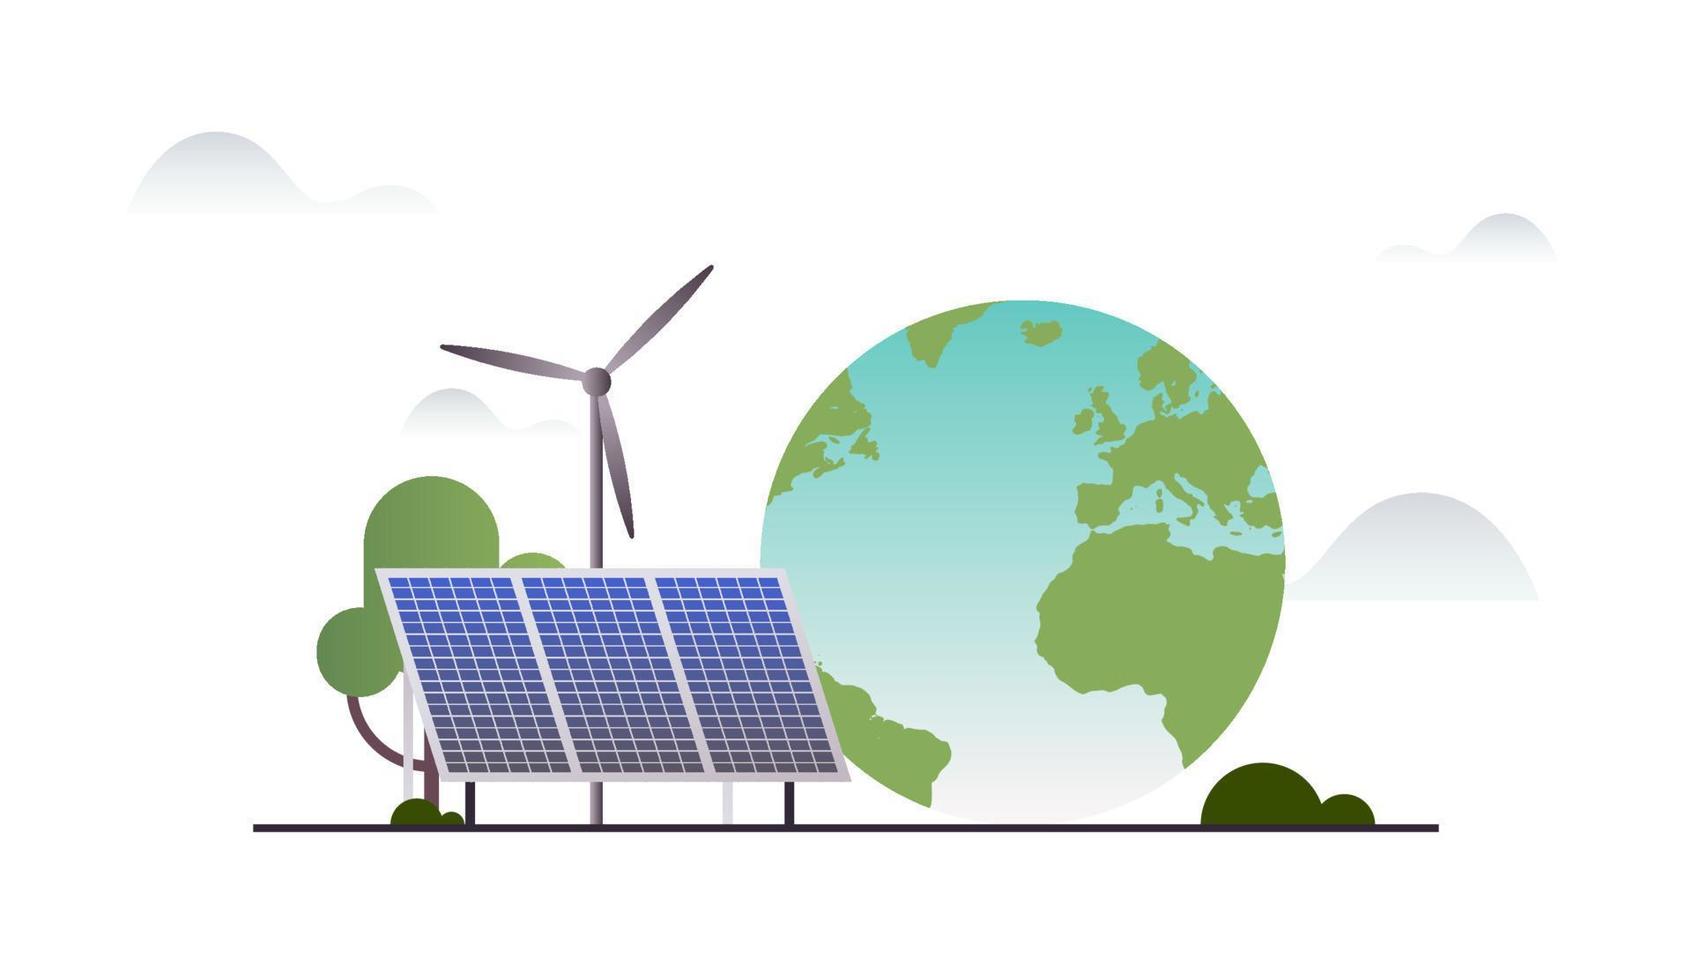 nachhaltigkeit und esg, grün, energie, nachhaltige industrie mit windmühlen und solarenergiepaneelen, flache vektorillustration des umwelt-, sozial-, unternehmensführungskonzepts. vektor